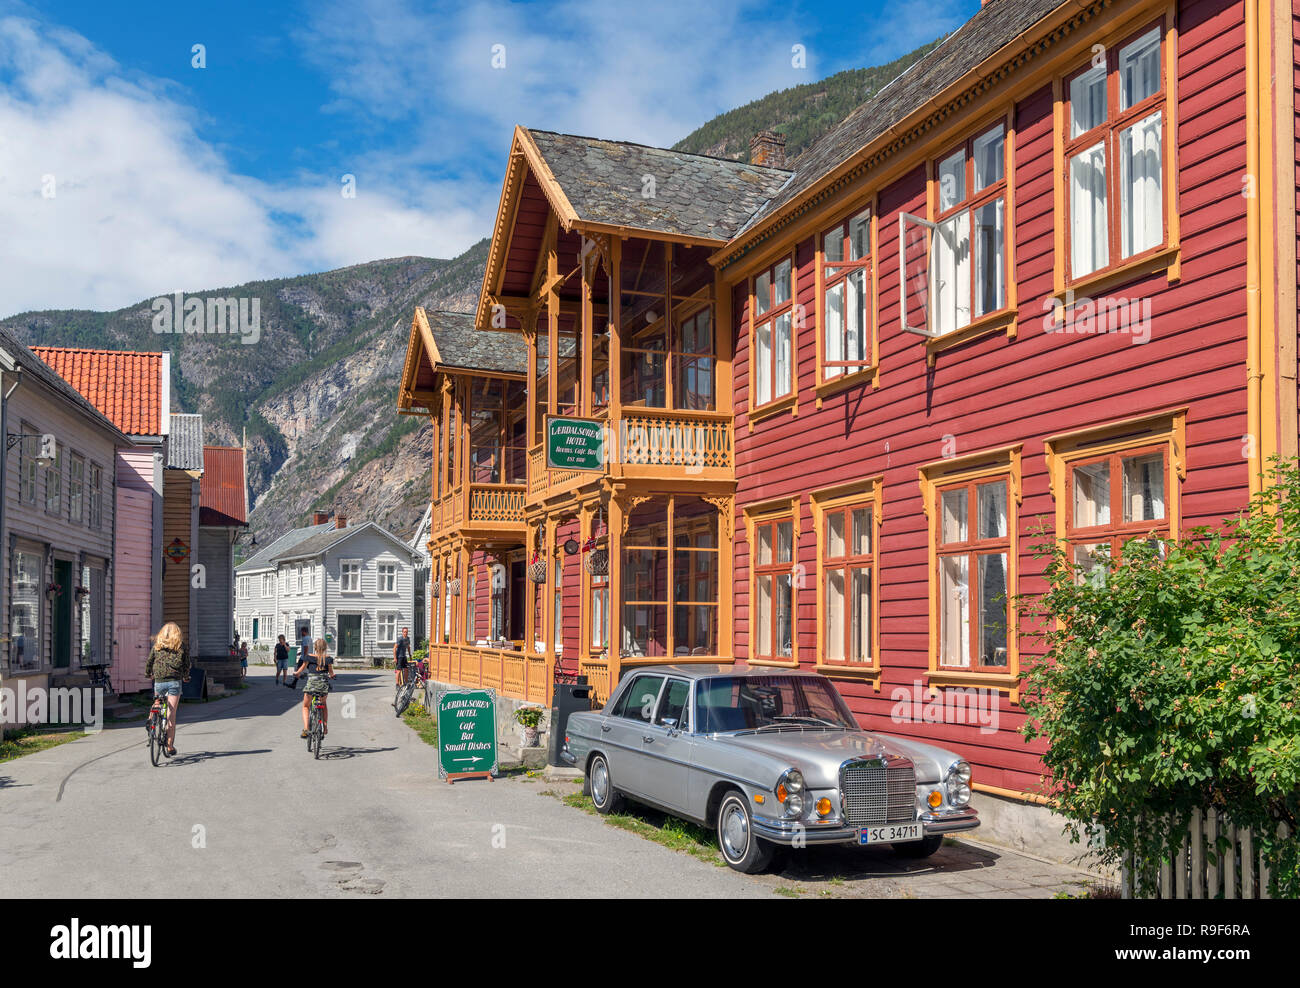 Lærdalsørens Hotel and traditional wooden houses in Lærdal (Lærdalsøyri), Sogn og Fjordane, Norway Stock Photo